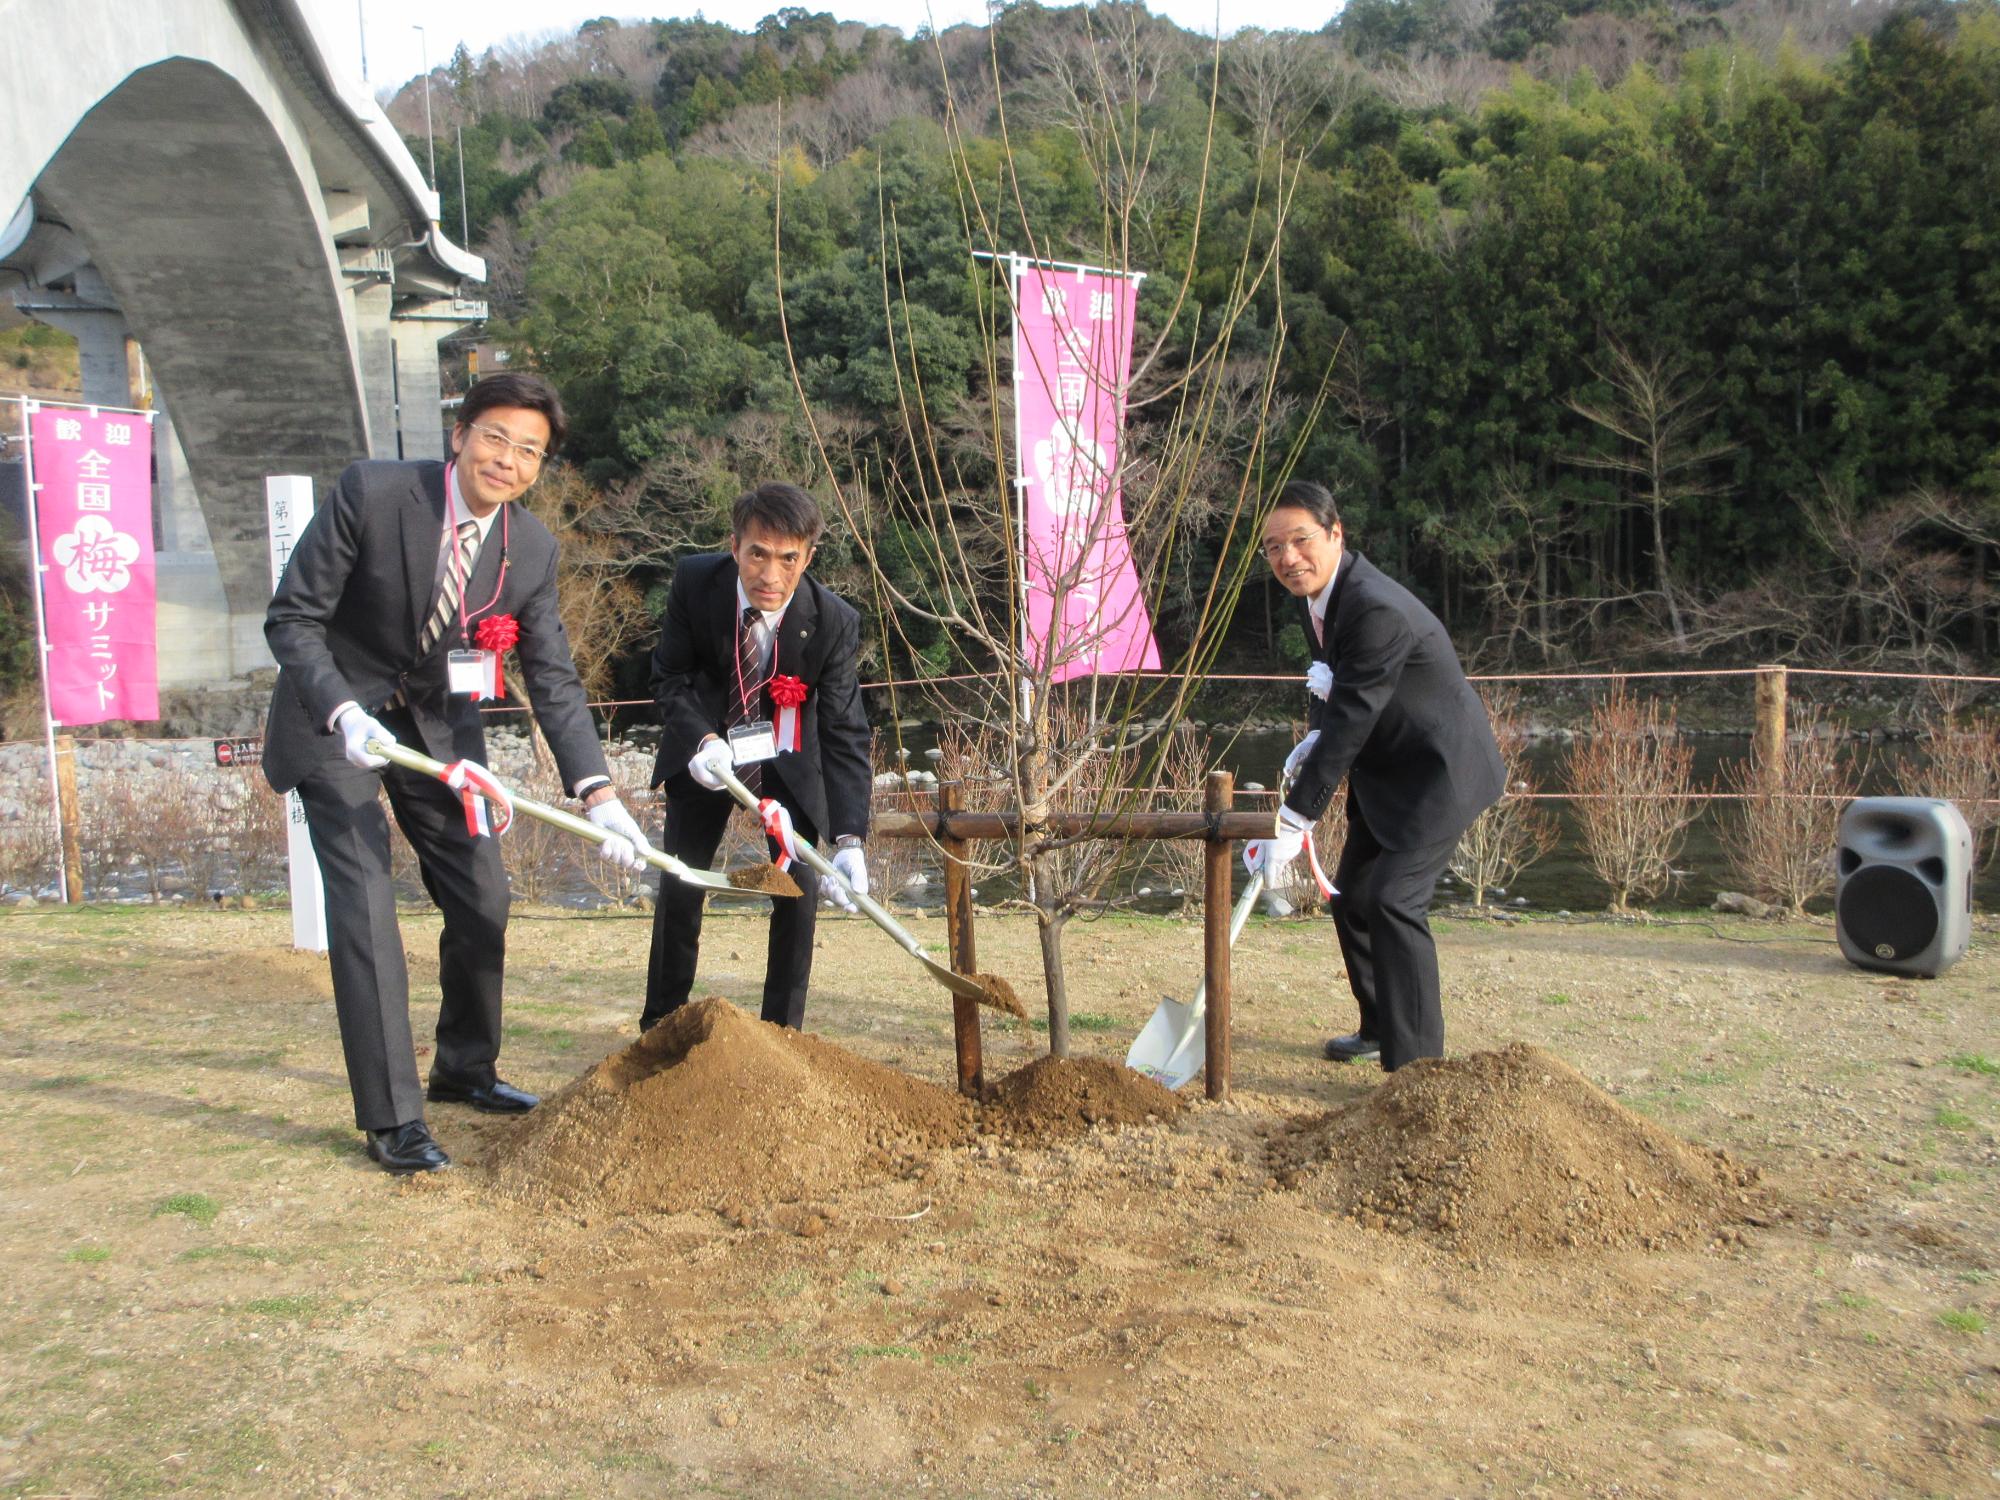 植樹された梅の木の根元にスコップで砂をかけているスーツを着た3人の男性の写真